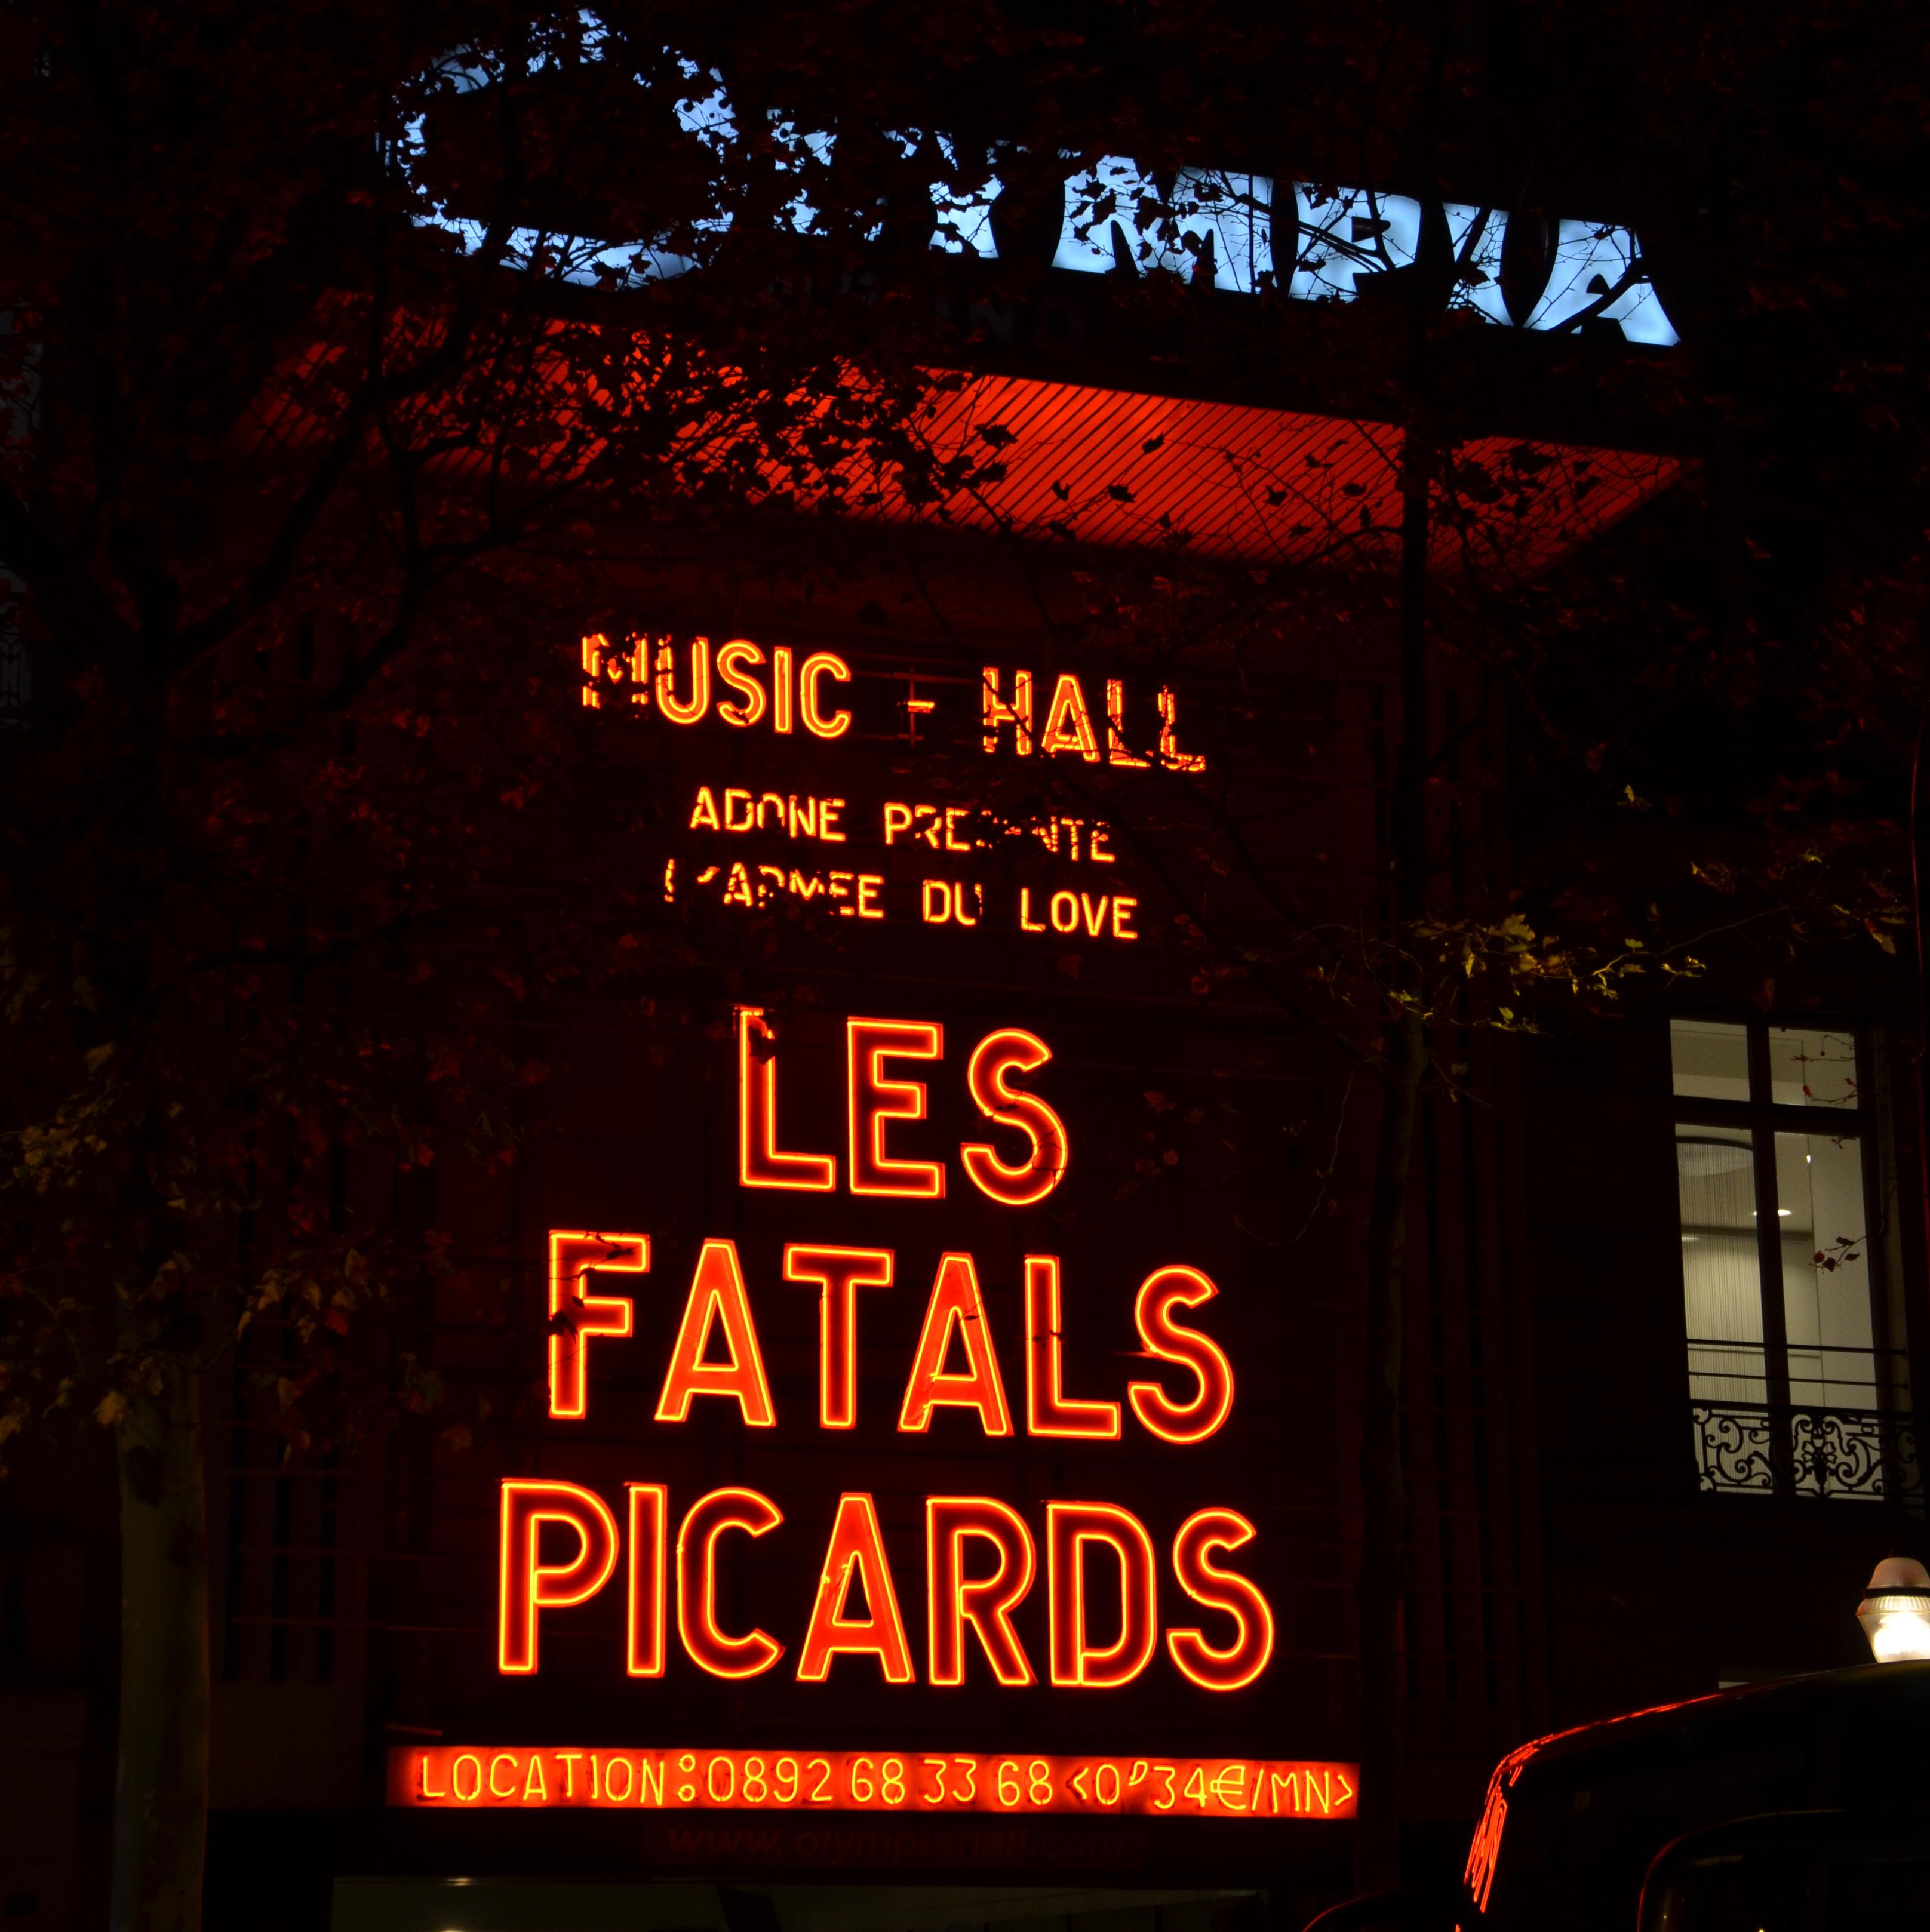 dsc015602 Fatals Picards